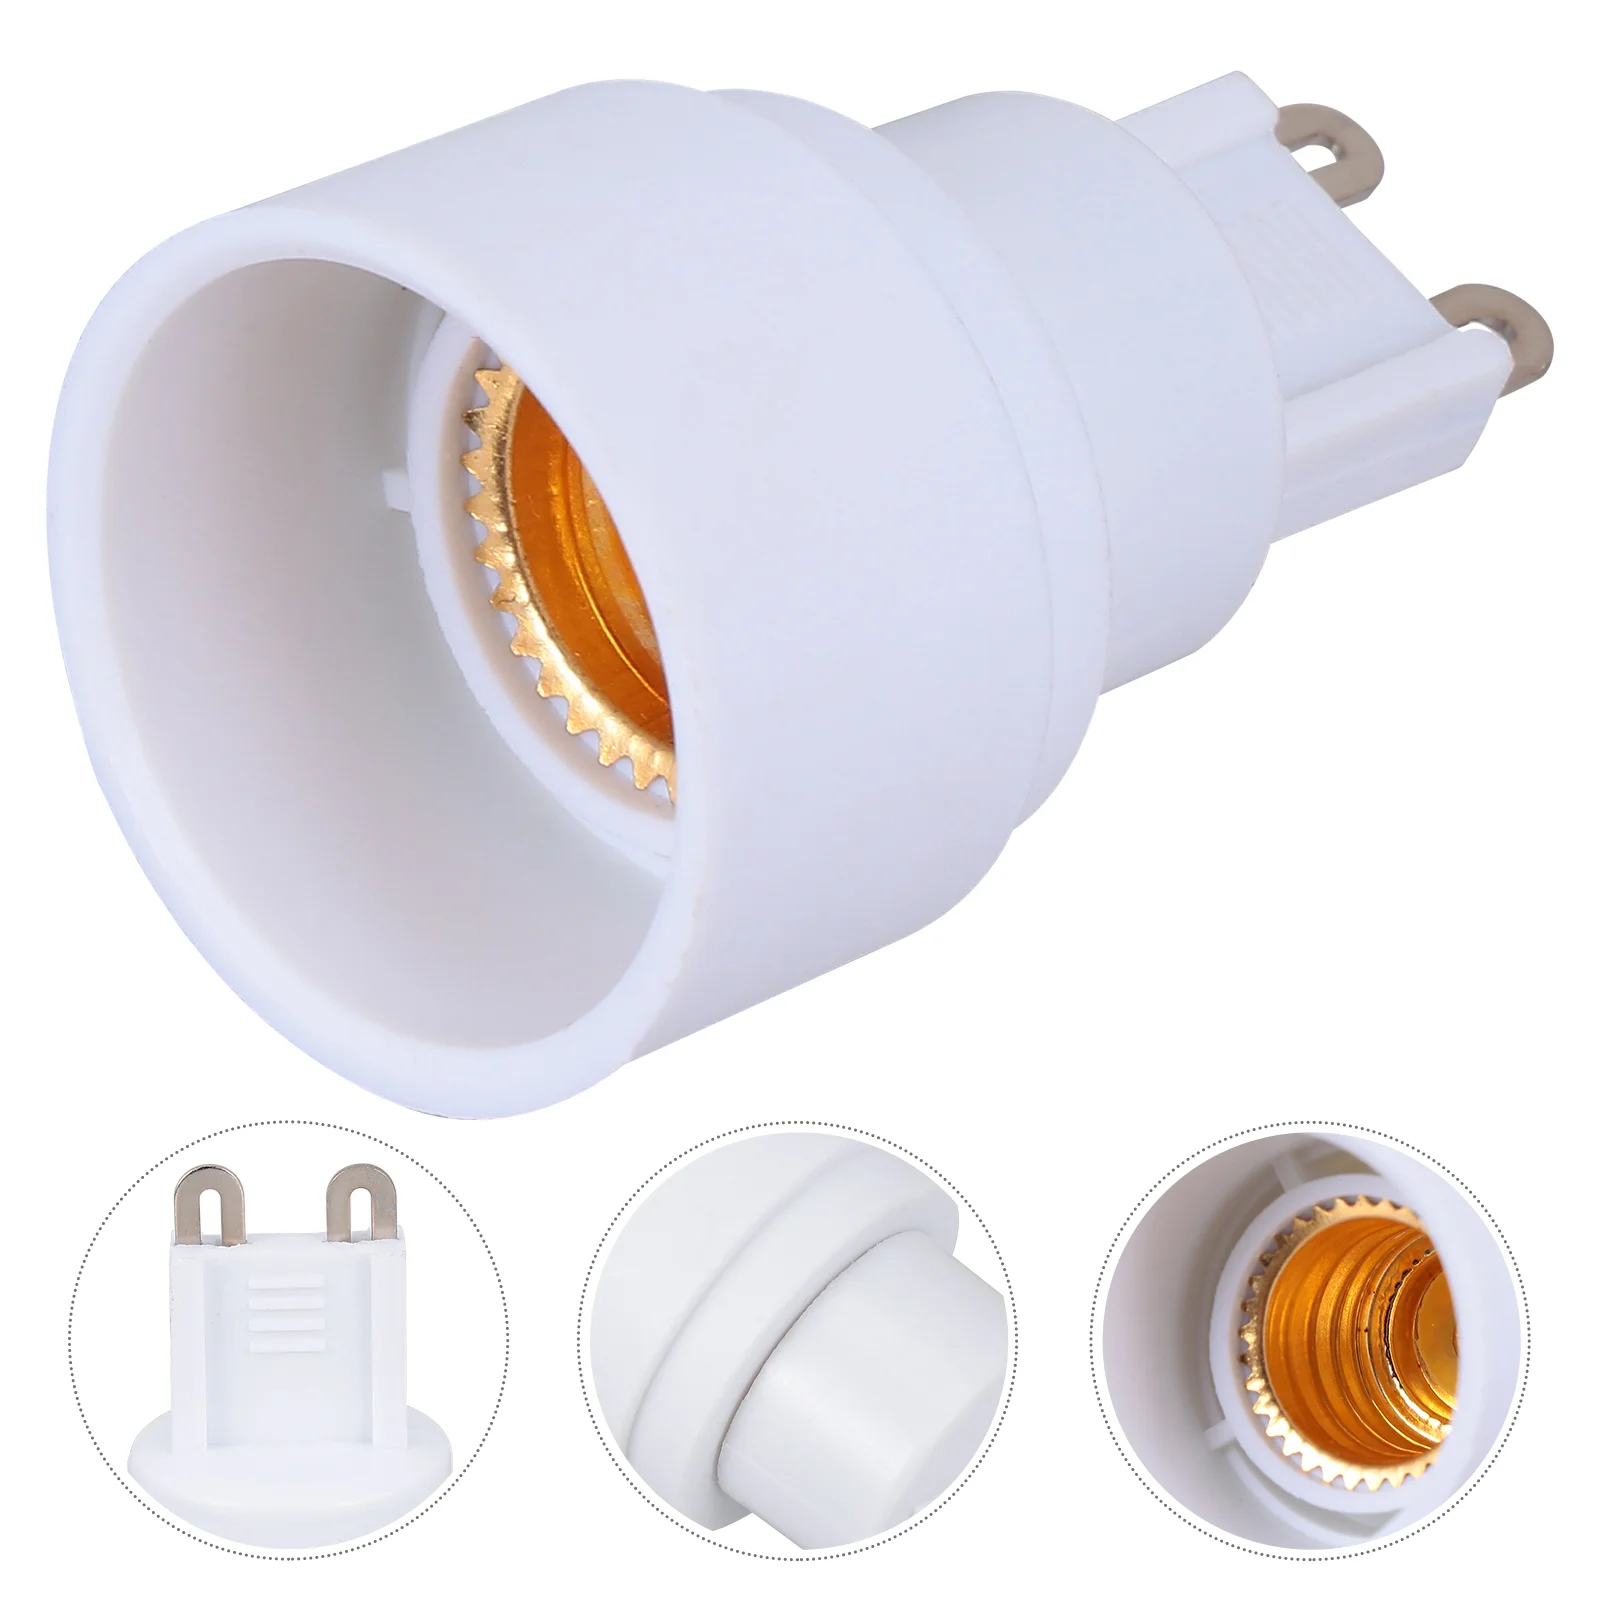 

4pcs LED Ceramic Light Bulbs Socket G9 to E14 Adapter Converter for Standard LED Bulbs （ 100- 230V ）